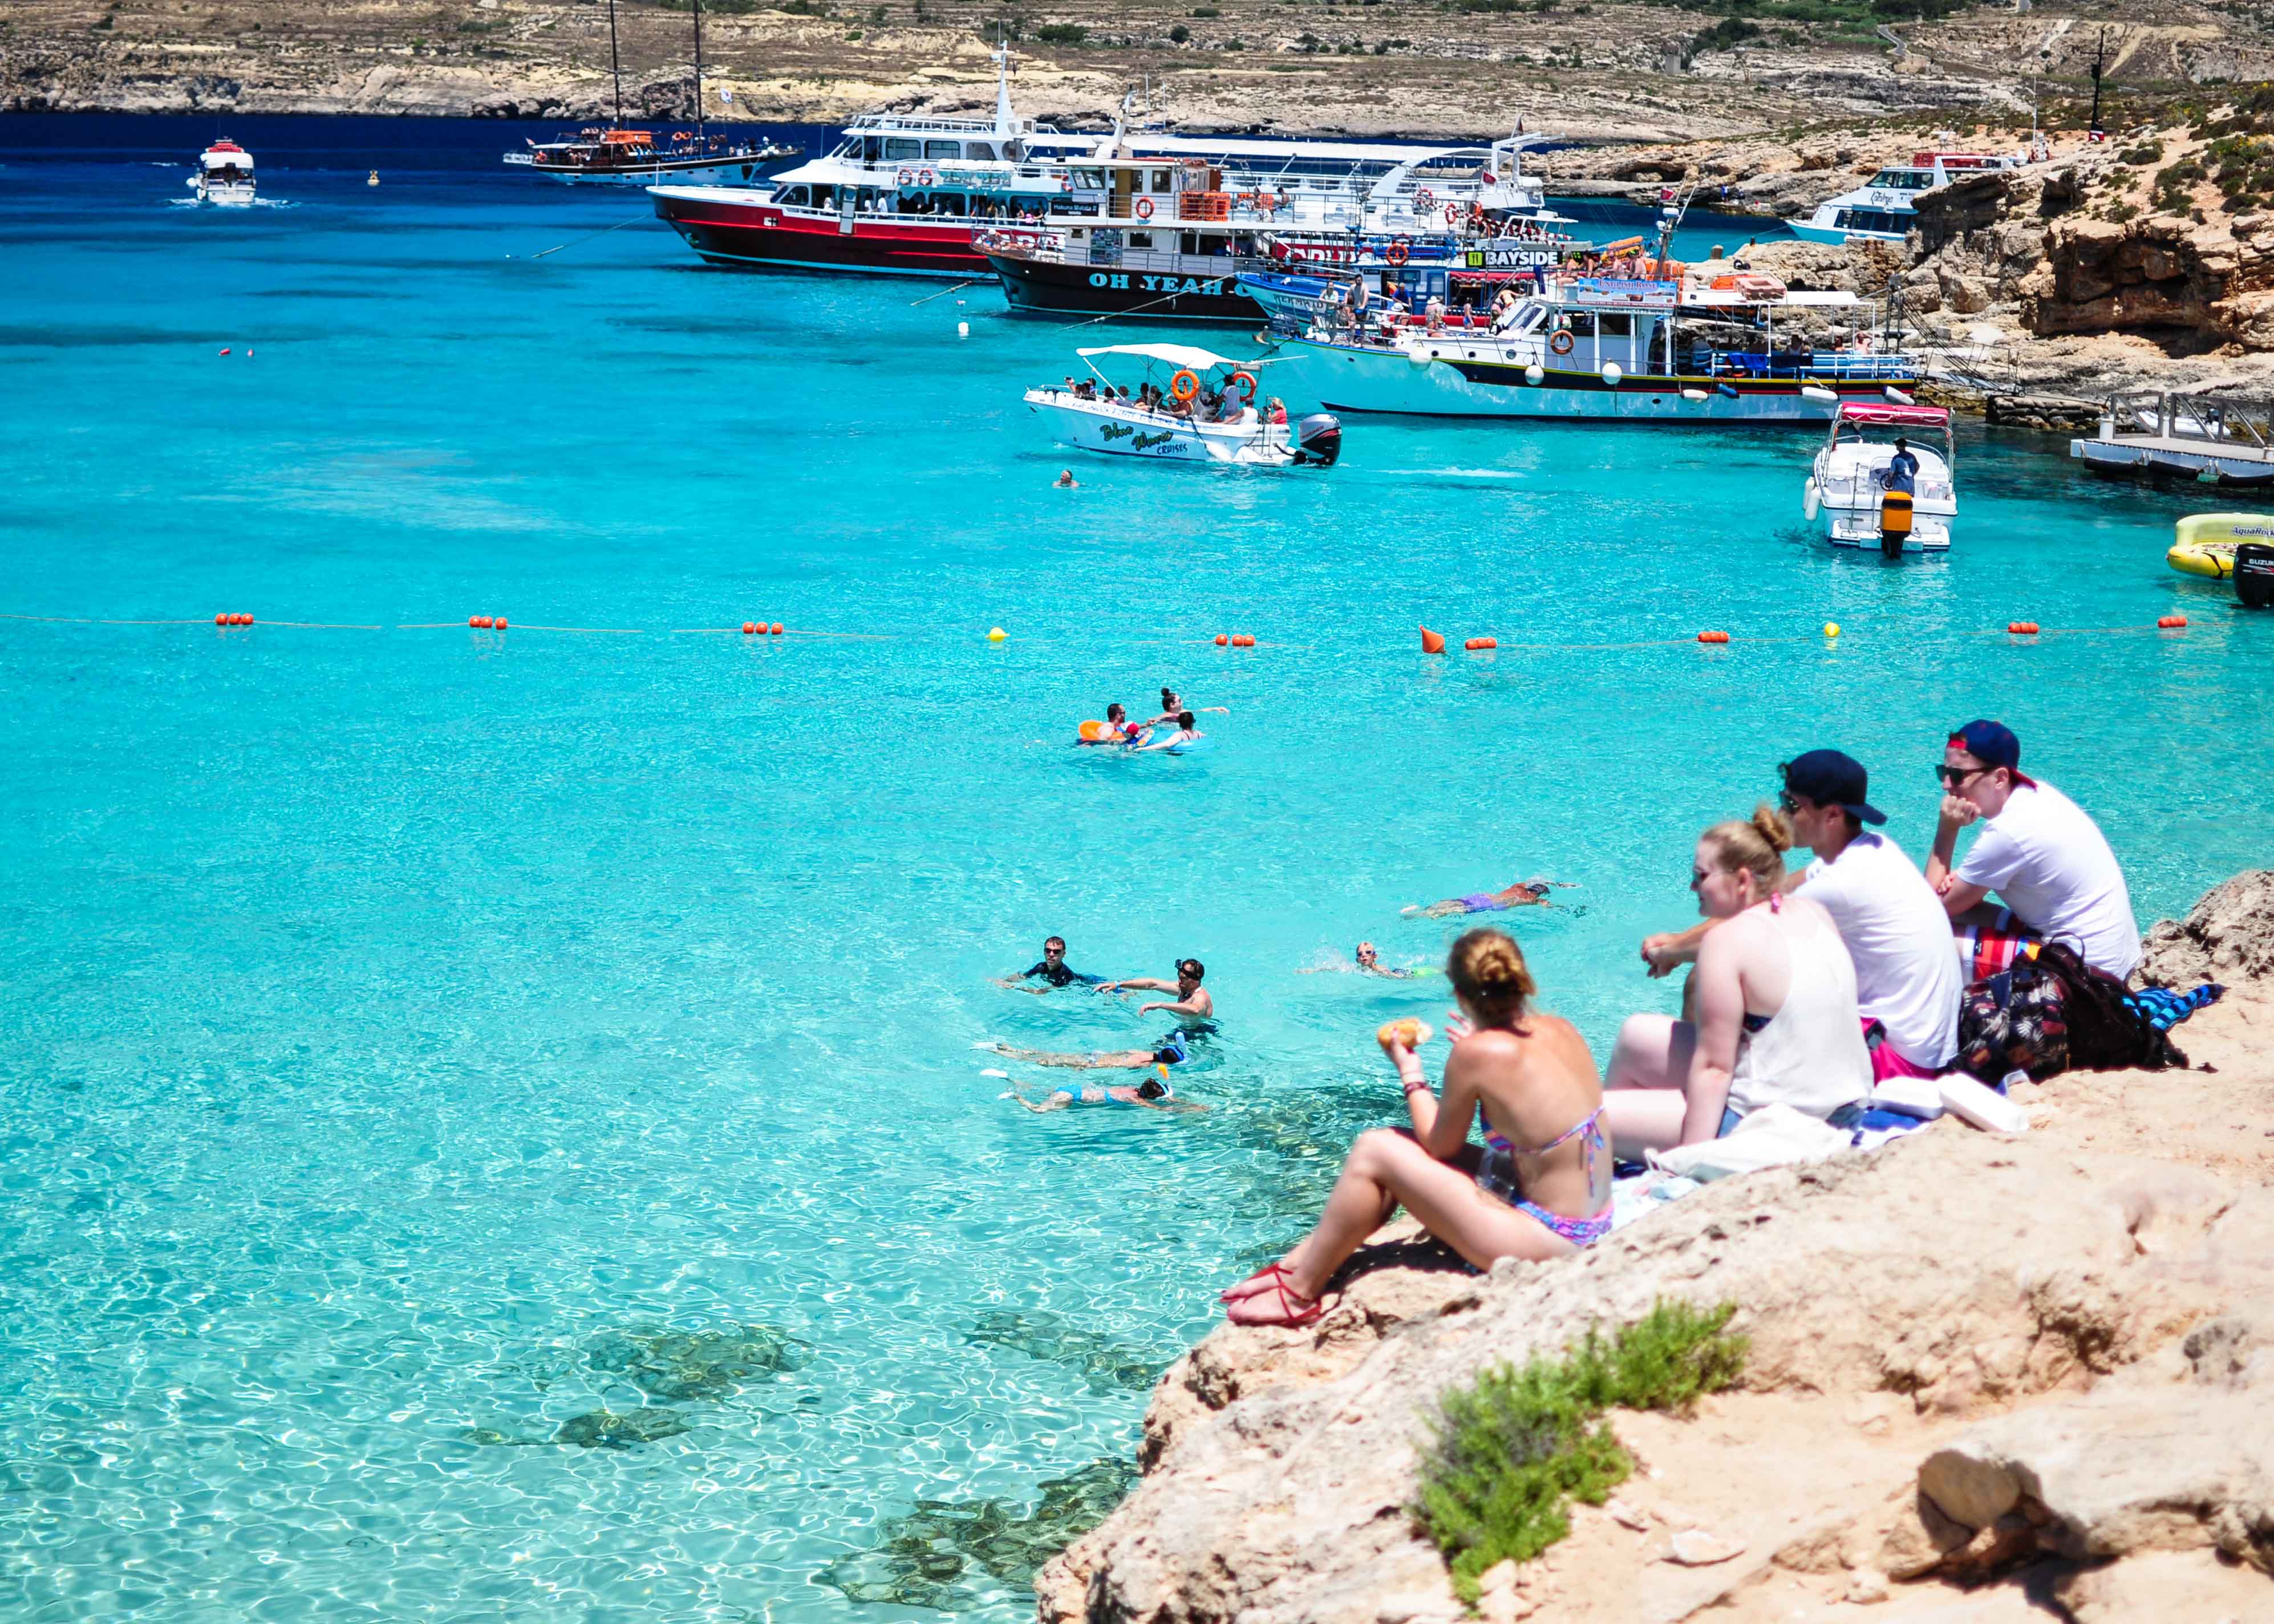 Where to spend summer in Malta, Blue Lagoon, Comino Island